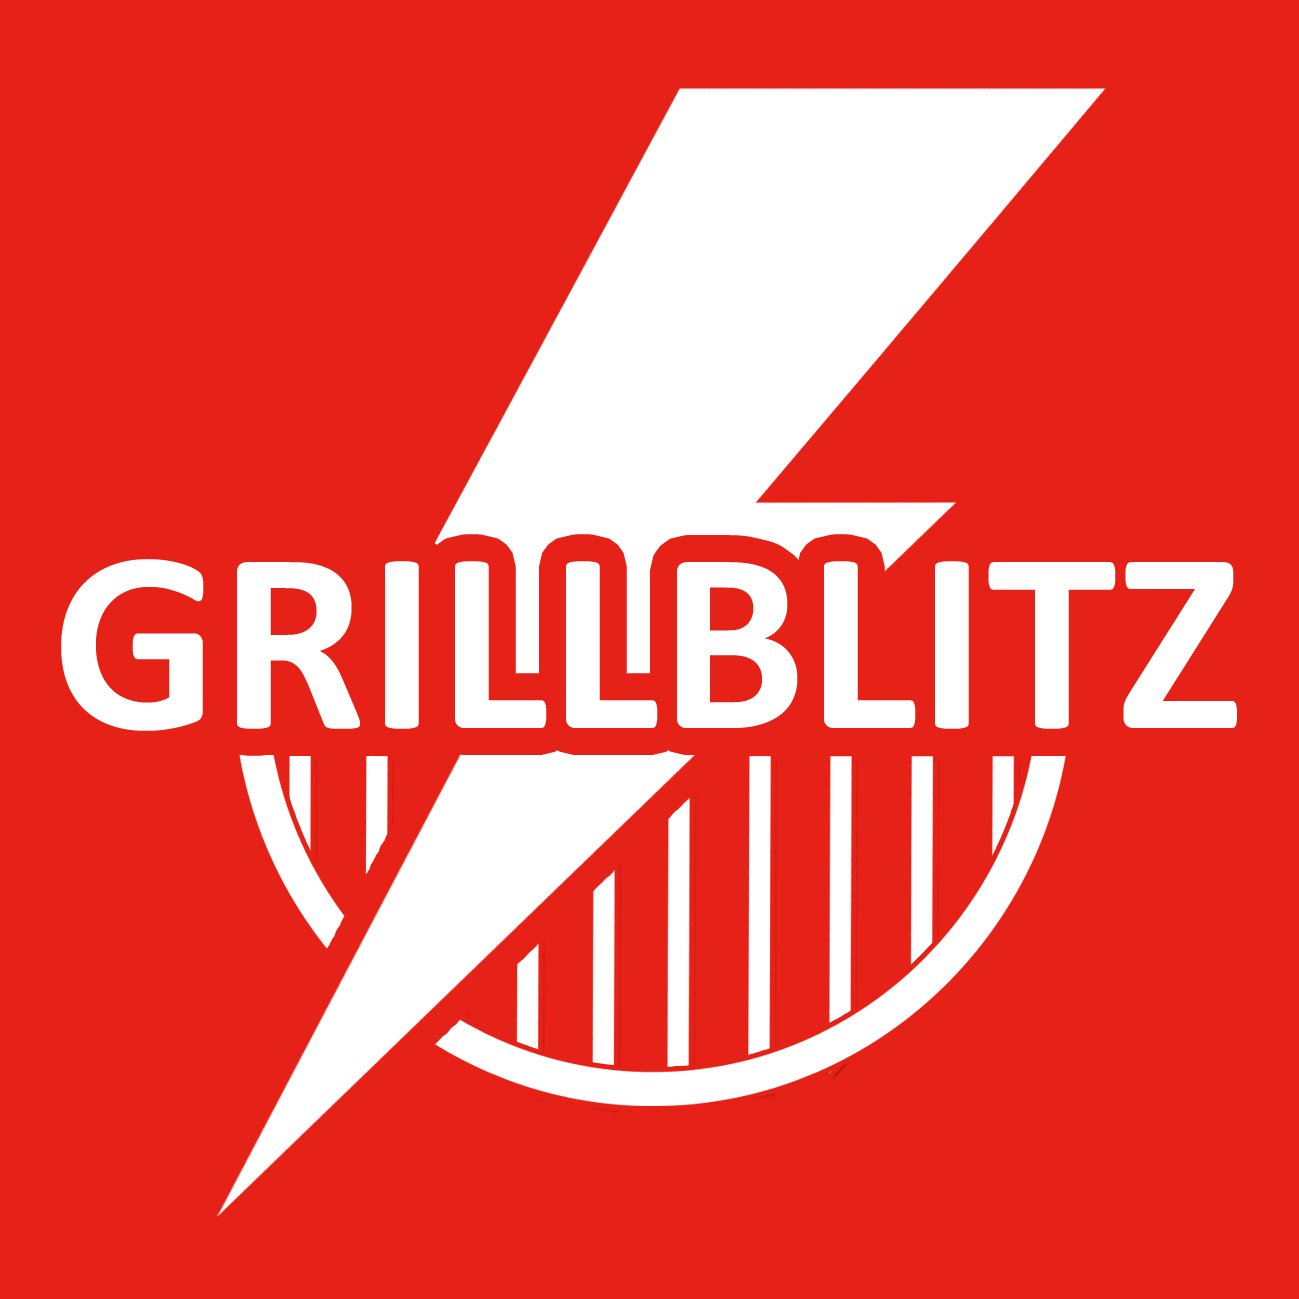 GRILLBLITZ SHOP